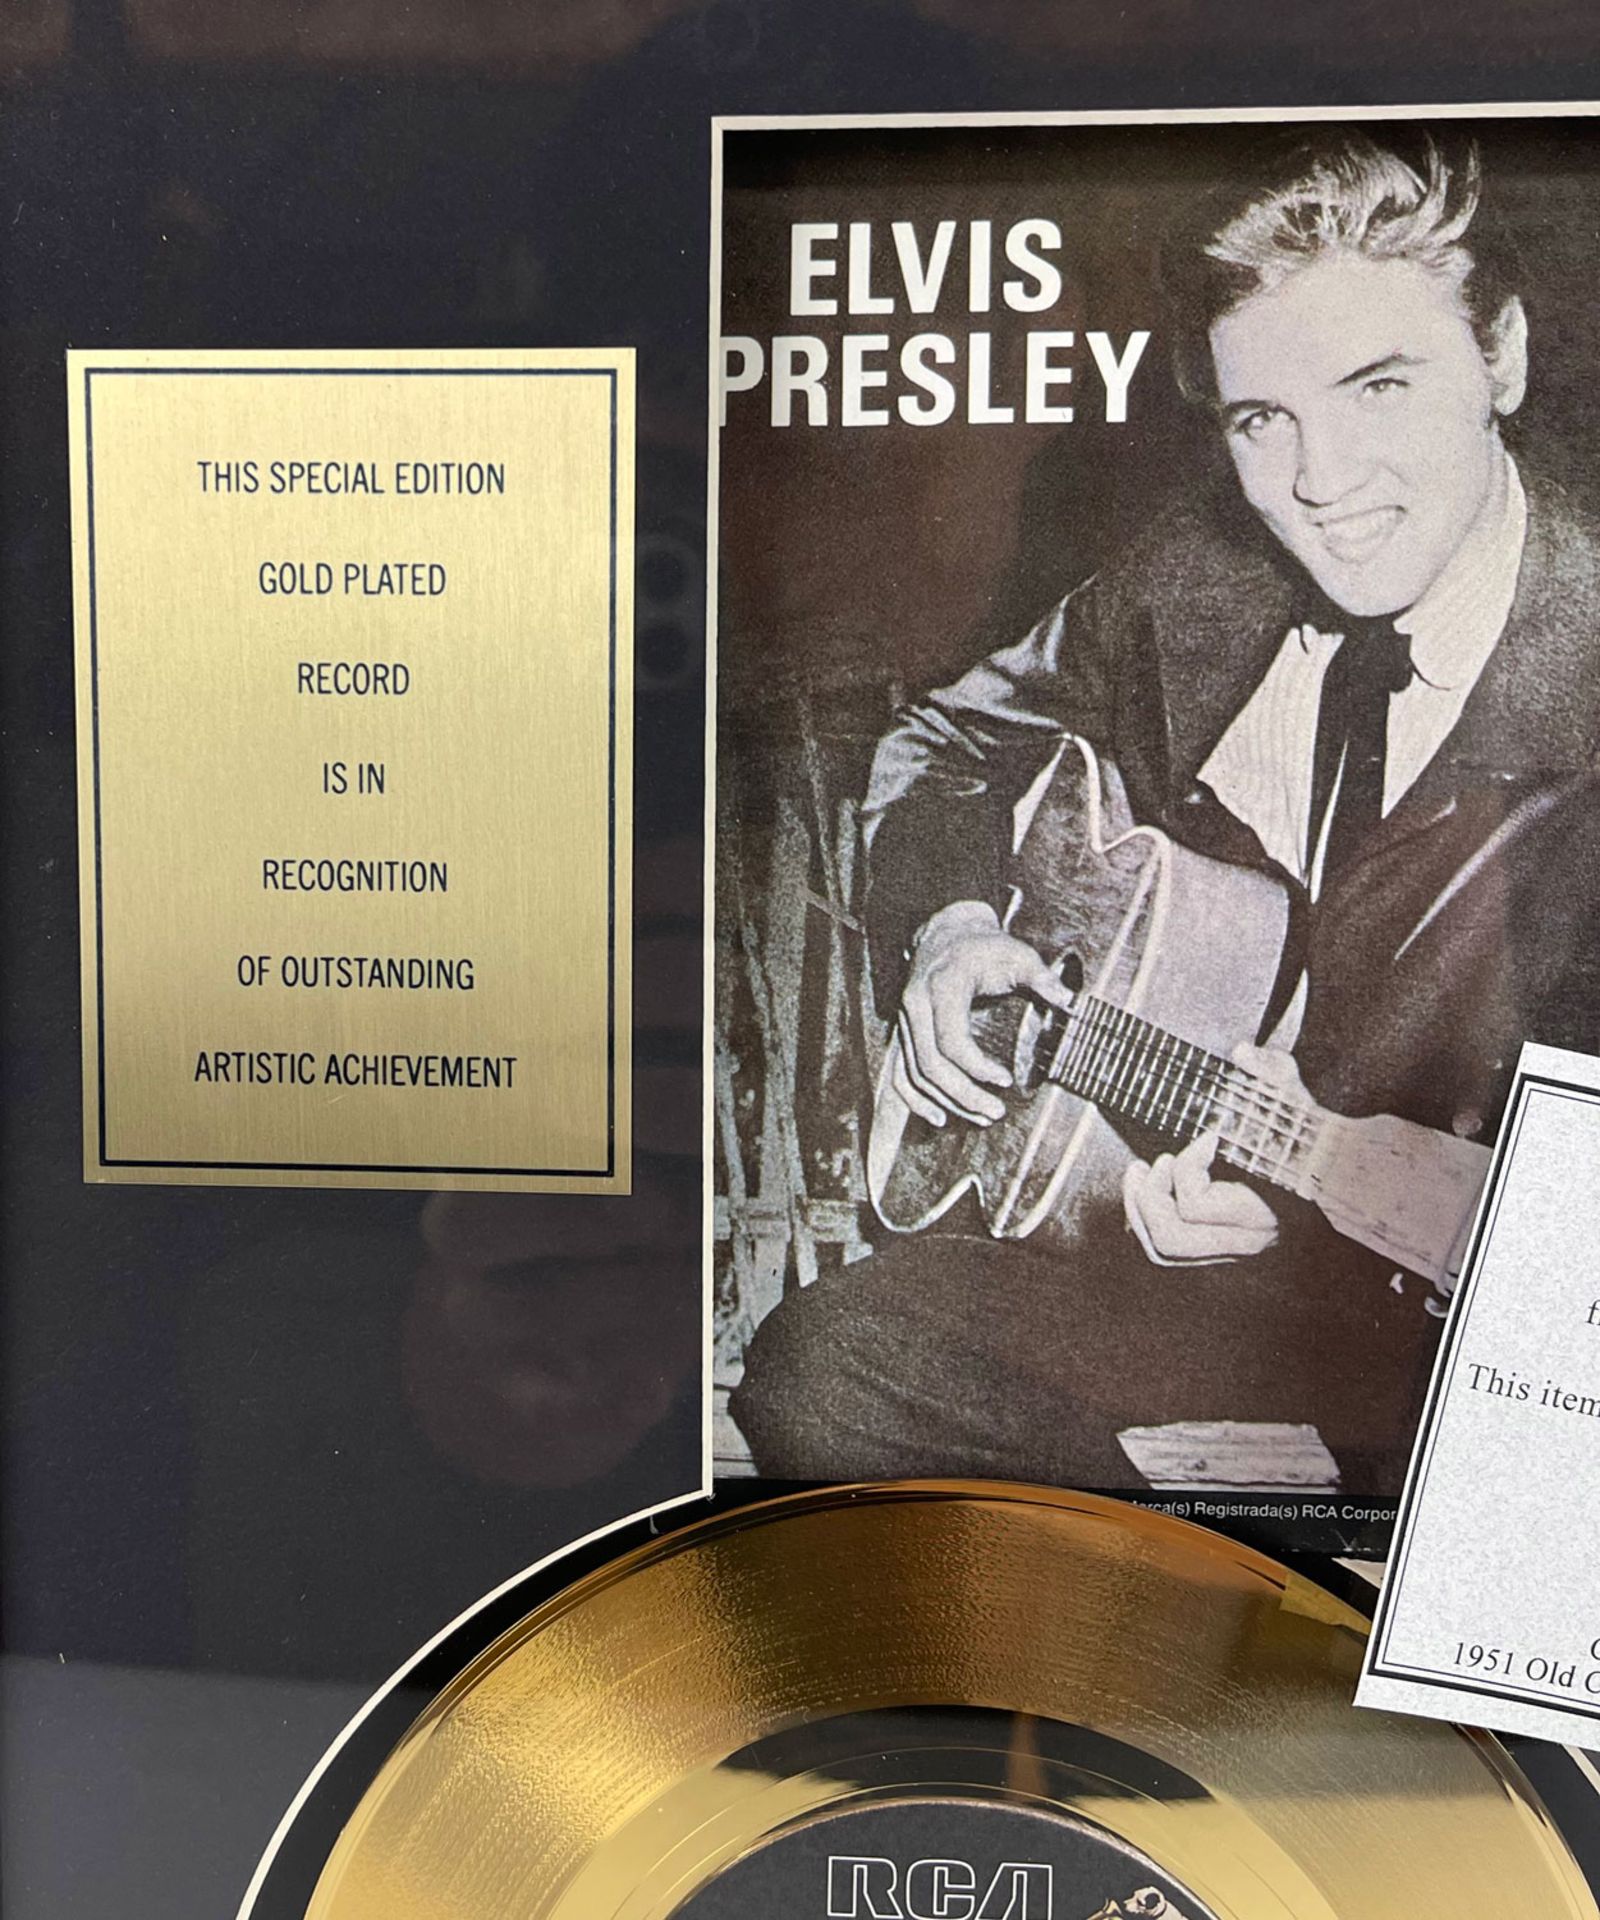 Elvis Presley Framed Golden Record "Love Me Tender" - Image 3 of 7